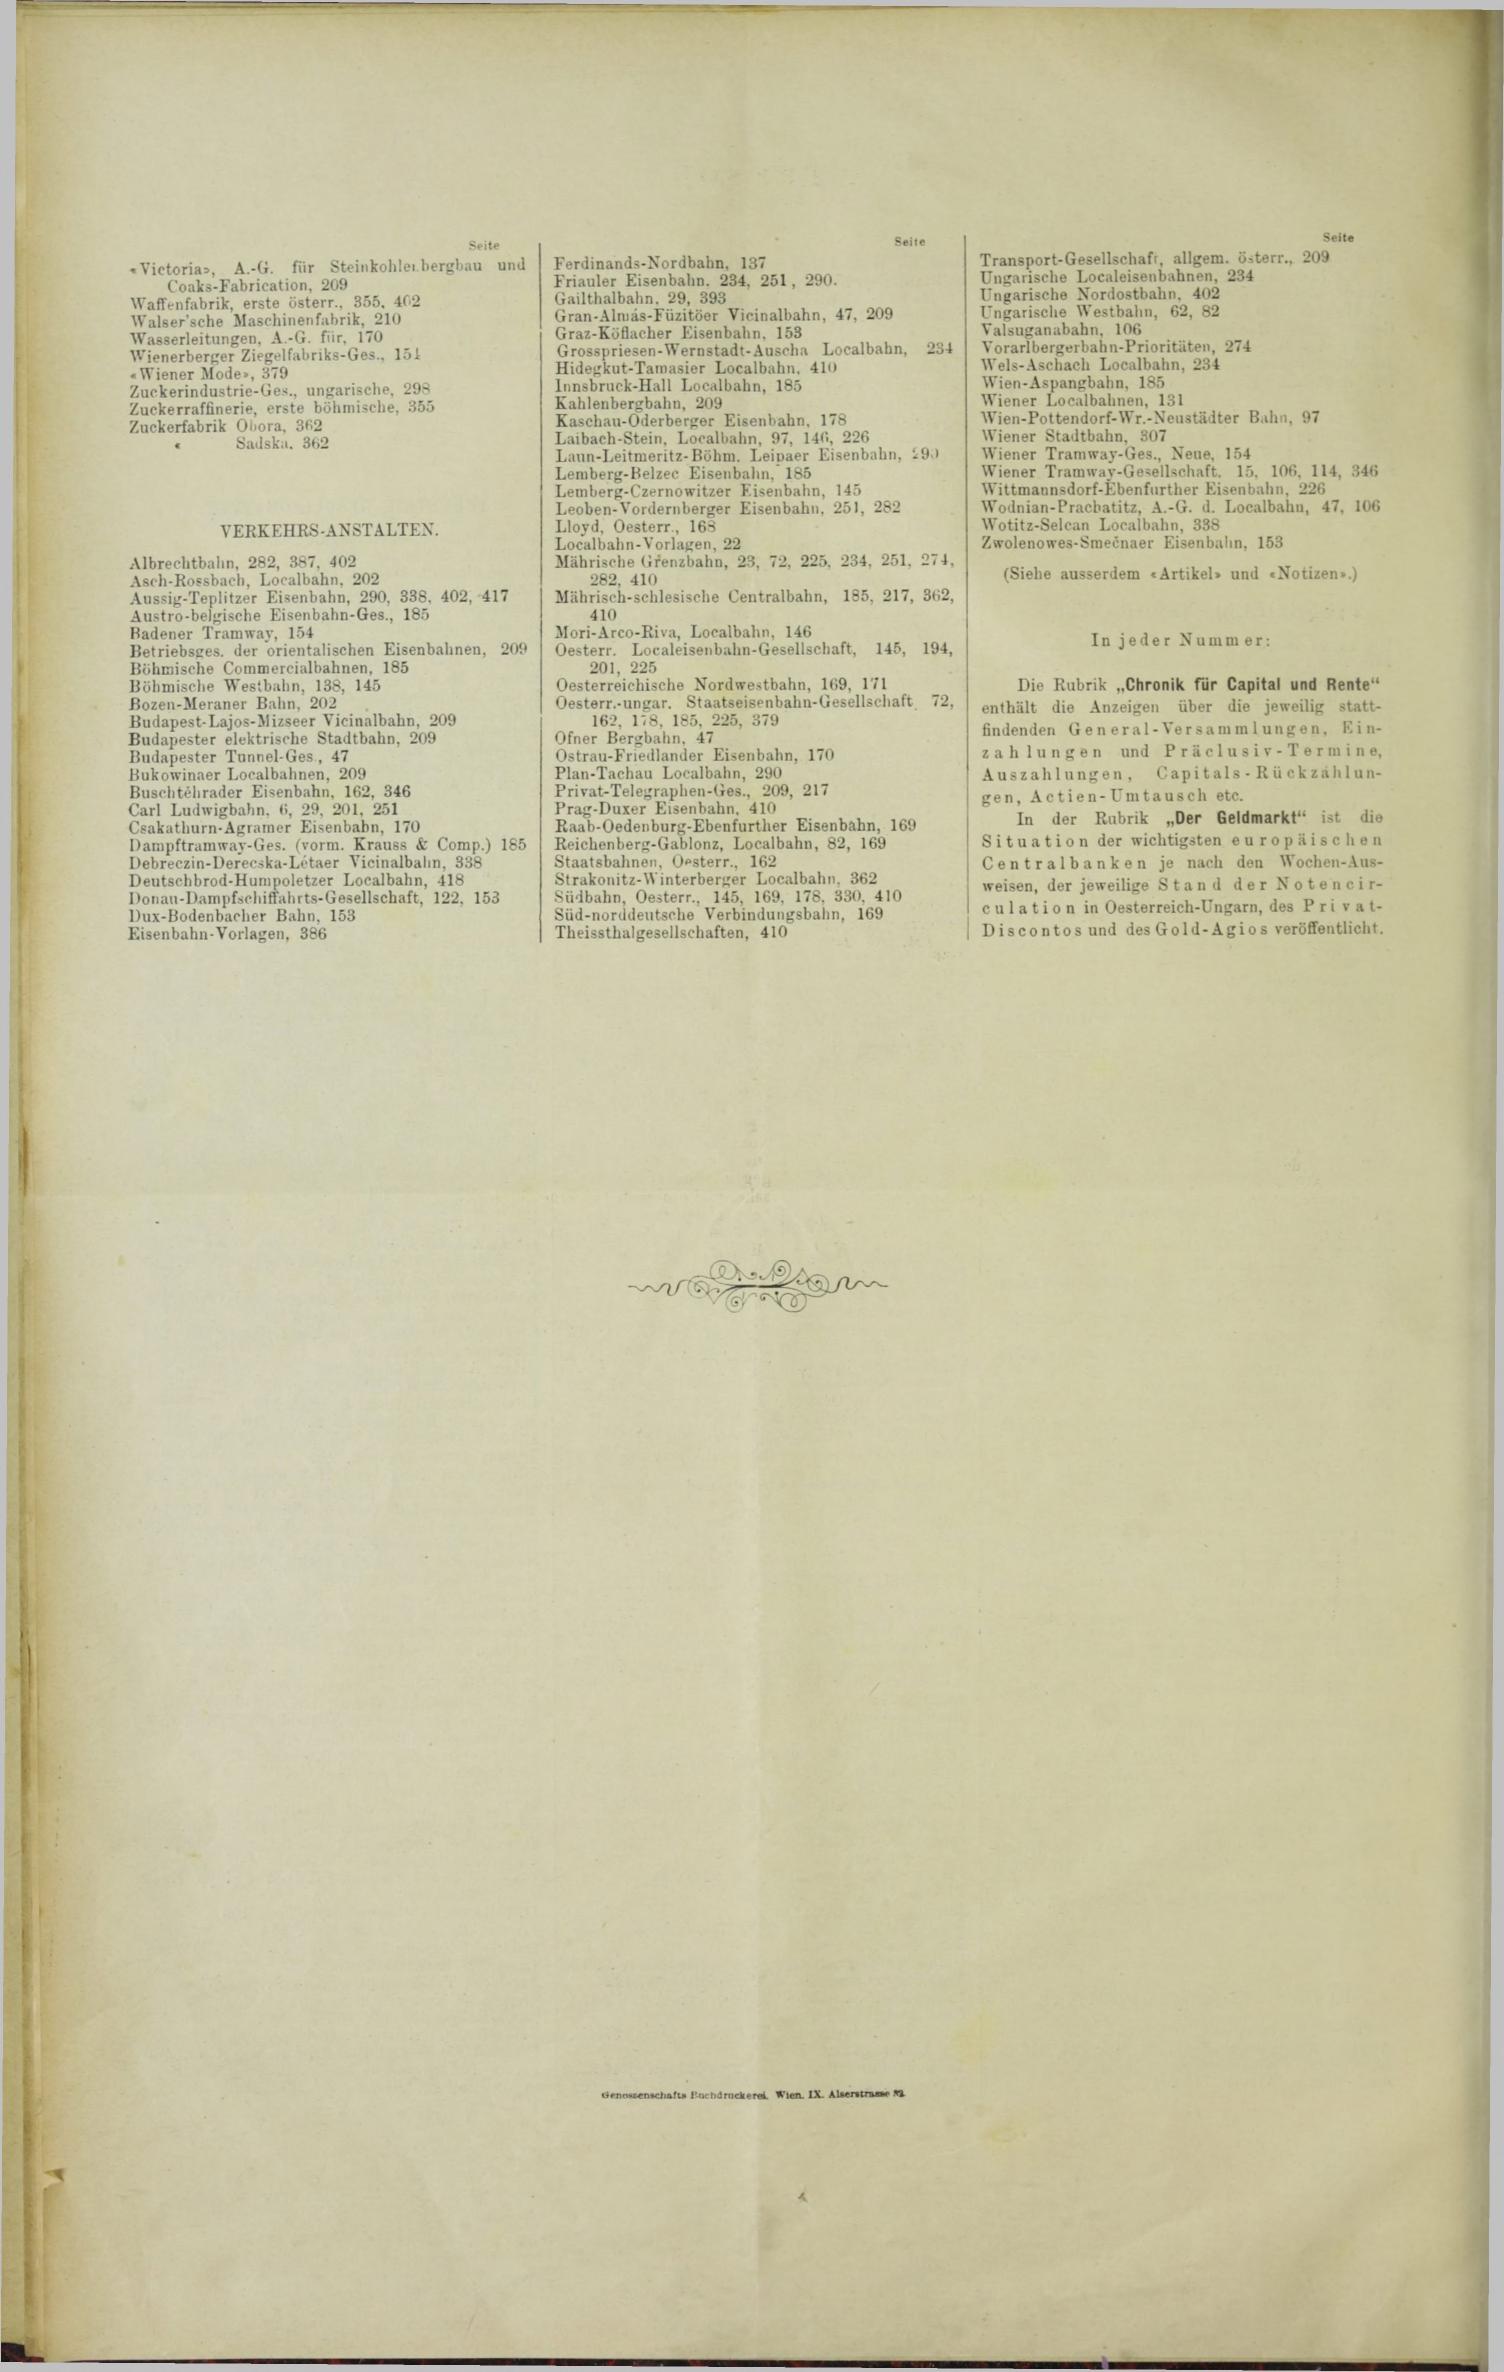 Der Tresor 06.04.1893 - Seite 12